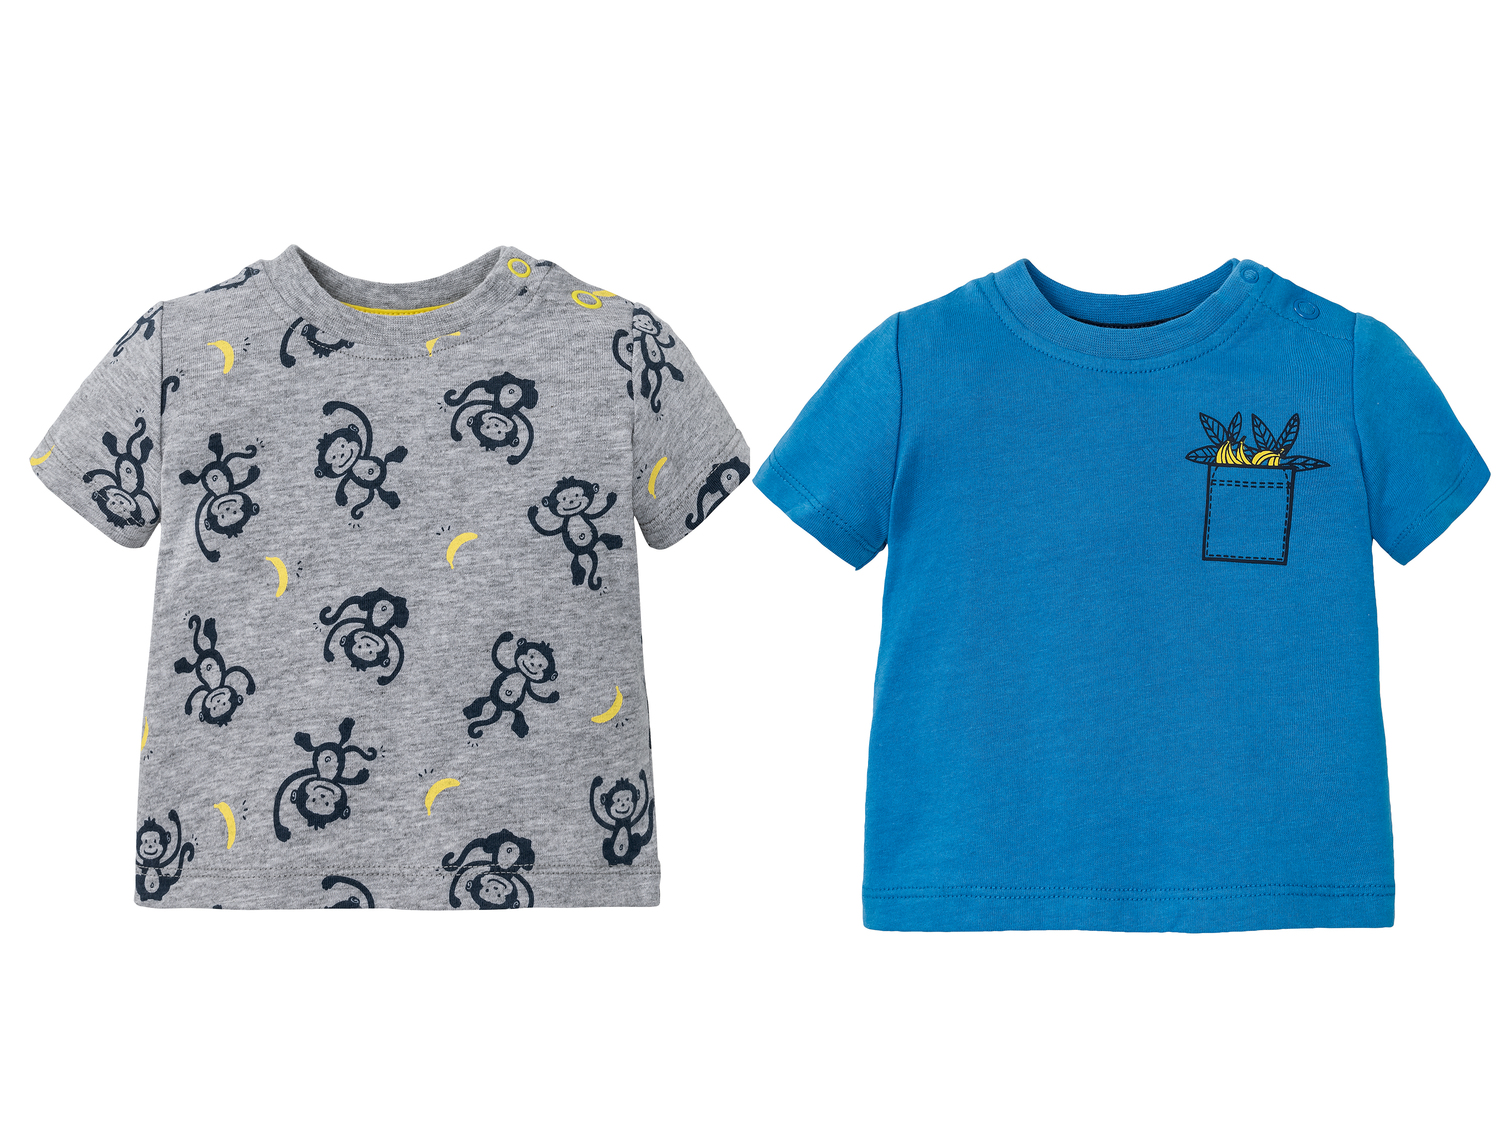 T-shirts bébé , le prix 3.99 &#8364; 
- Du 0-2 mois (50-56 cm) au 12-24 mois ...